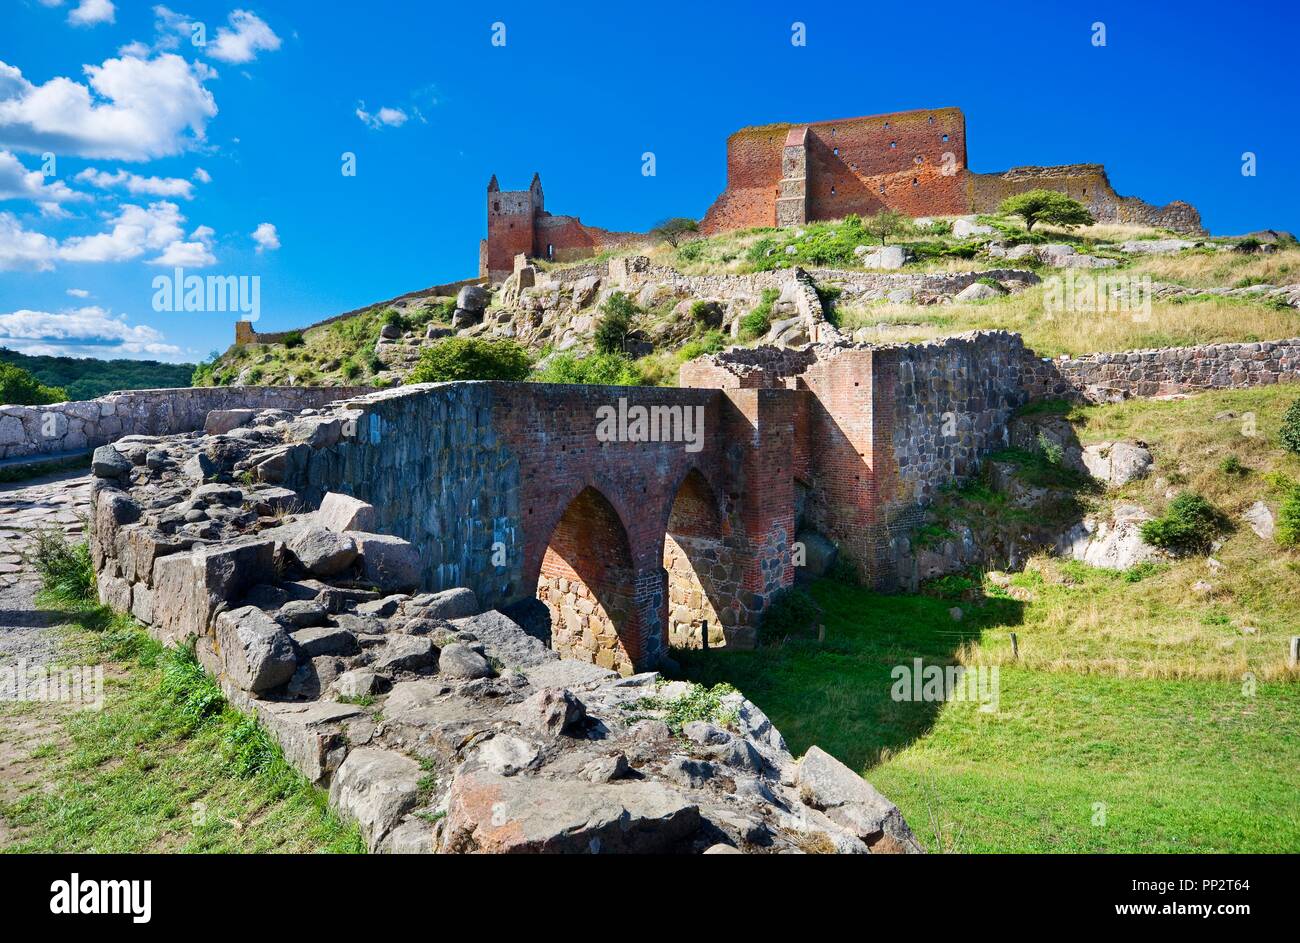 Il castello di Hammershus - la più grande del Nord Europa rovine del castello situato a ripida roccia di granito sulla costa del Mar Baltico, Bornholm, Danimarca Foto Stock